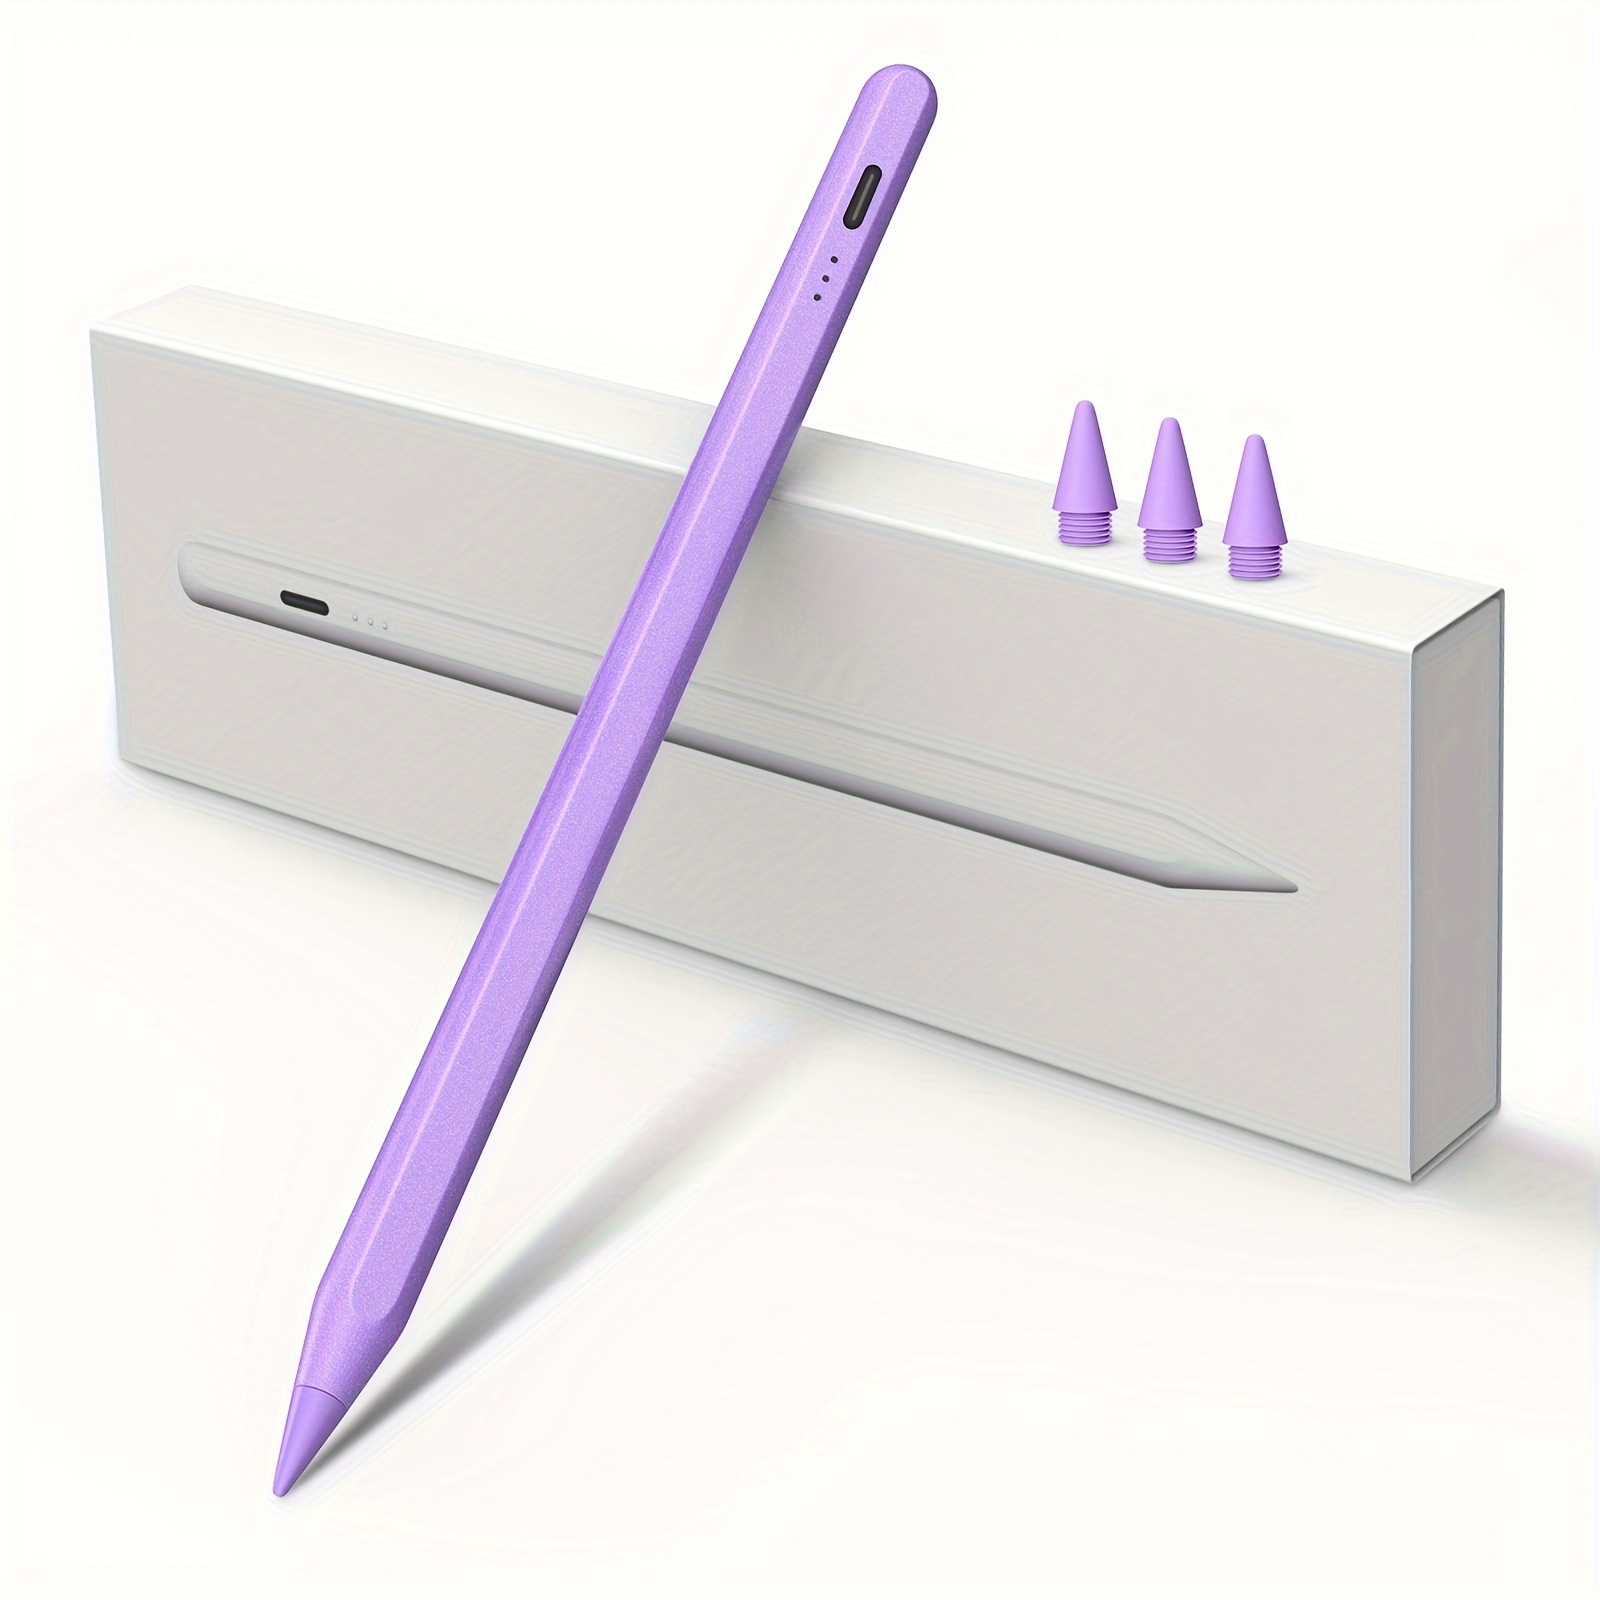 

Stylus Pen For , Pencil W/palm Rejection&tilt, 13 Mins Fast Charge, Meko Pen For 6-10, Pro11/12.9"/m4, Air3/4/5/6, /6 (purple)